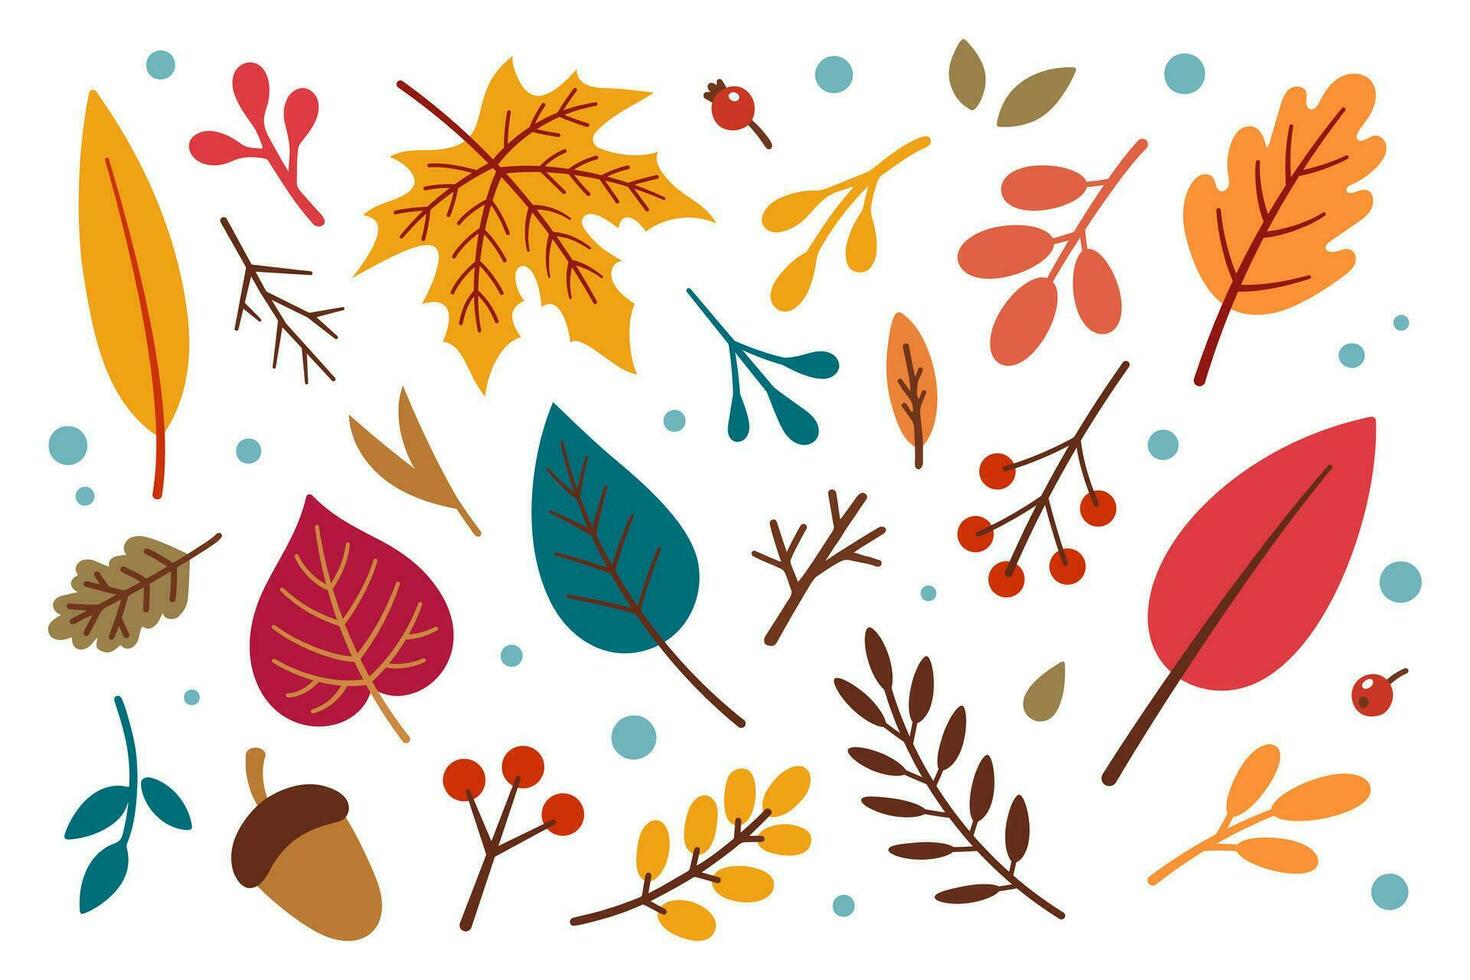 otoño diseño elementos colocar. otoño diseño elementos colocar. vector floral ilustración. otoño hojas recopilación. otoño elementos - bellota, manzana, hojas, bayas. plano diseño, garabatear estilo.